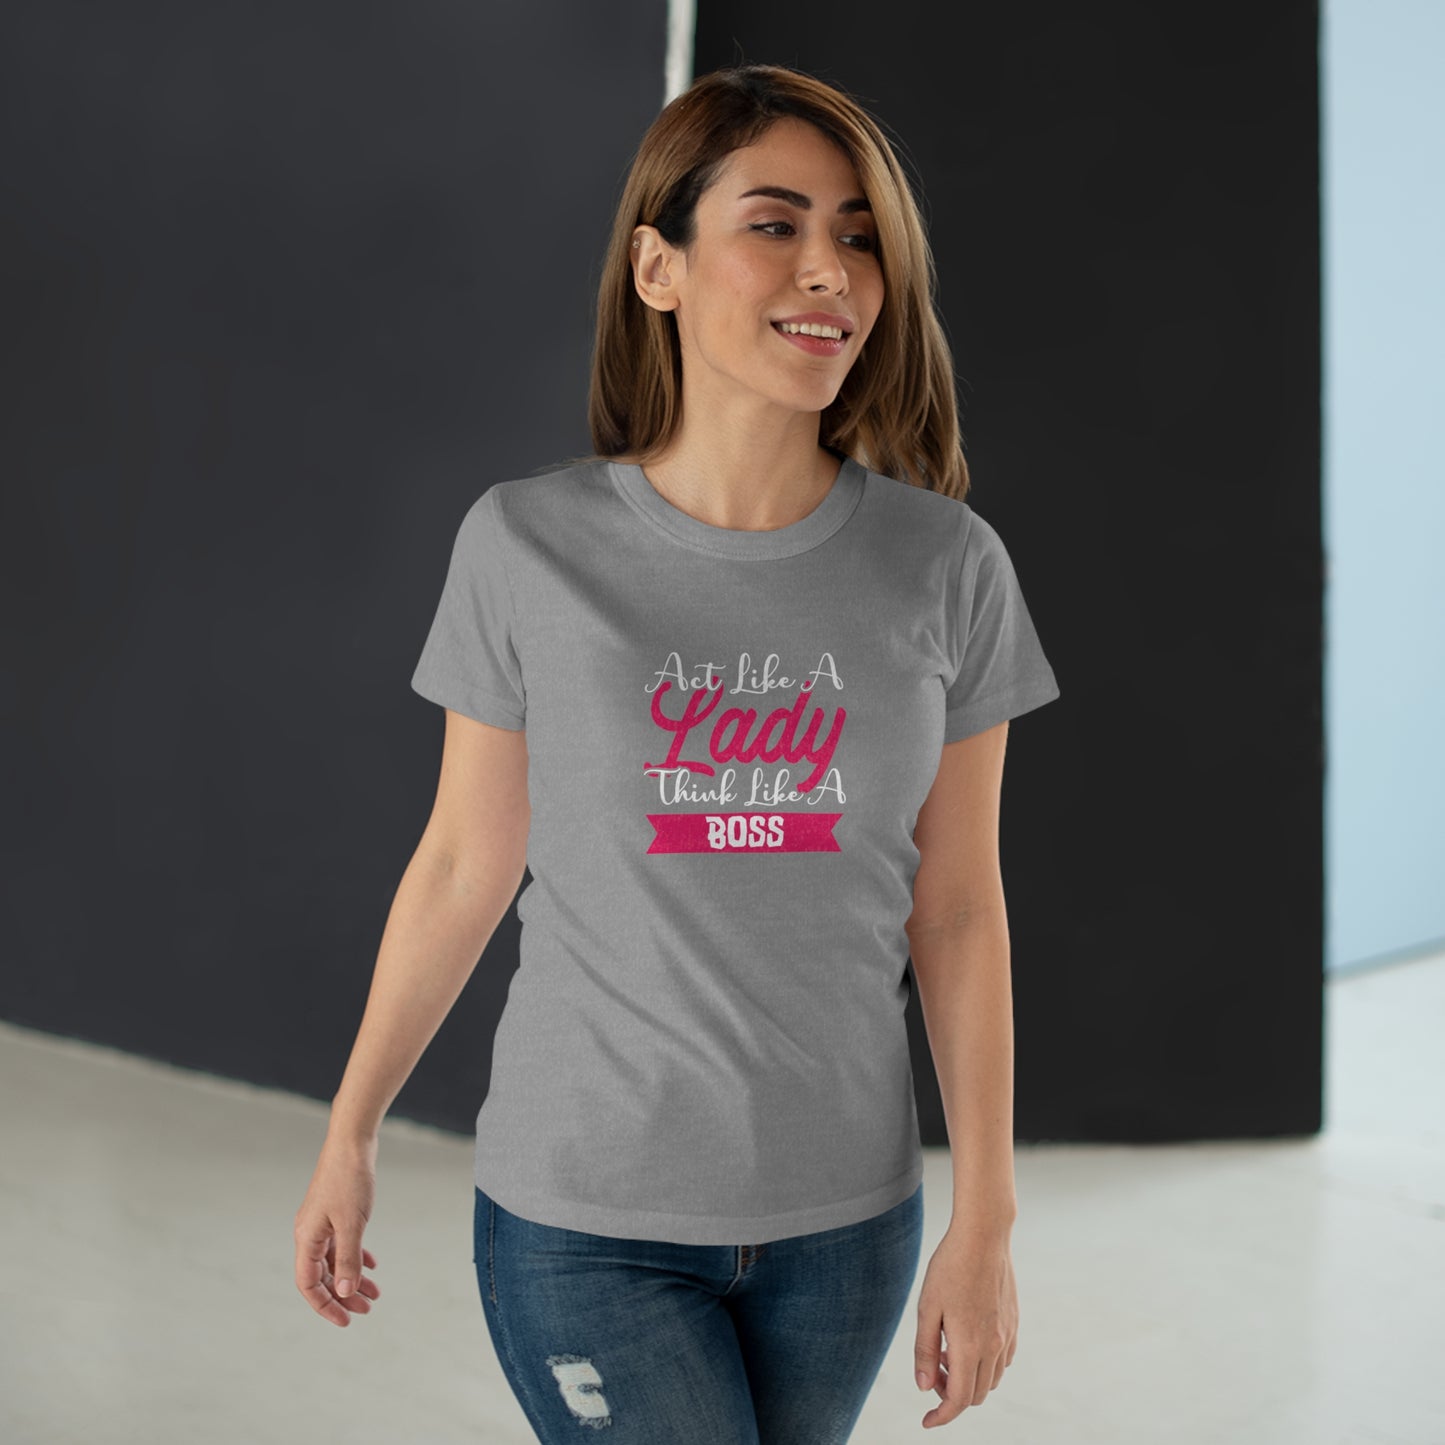 Act like a Lady, Think like a Boss Women's T-shirt